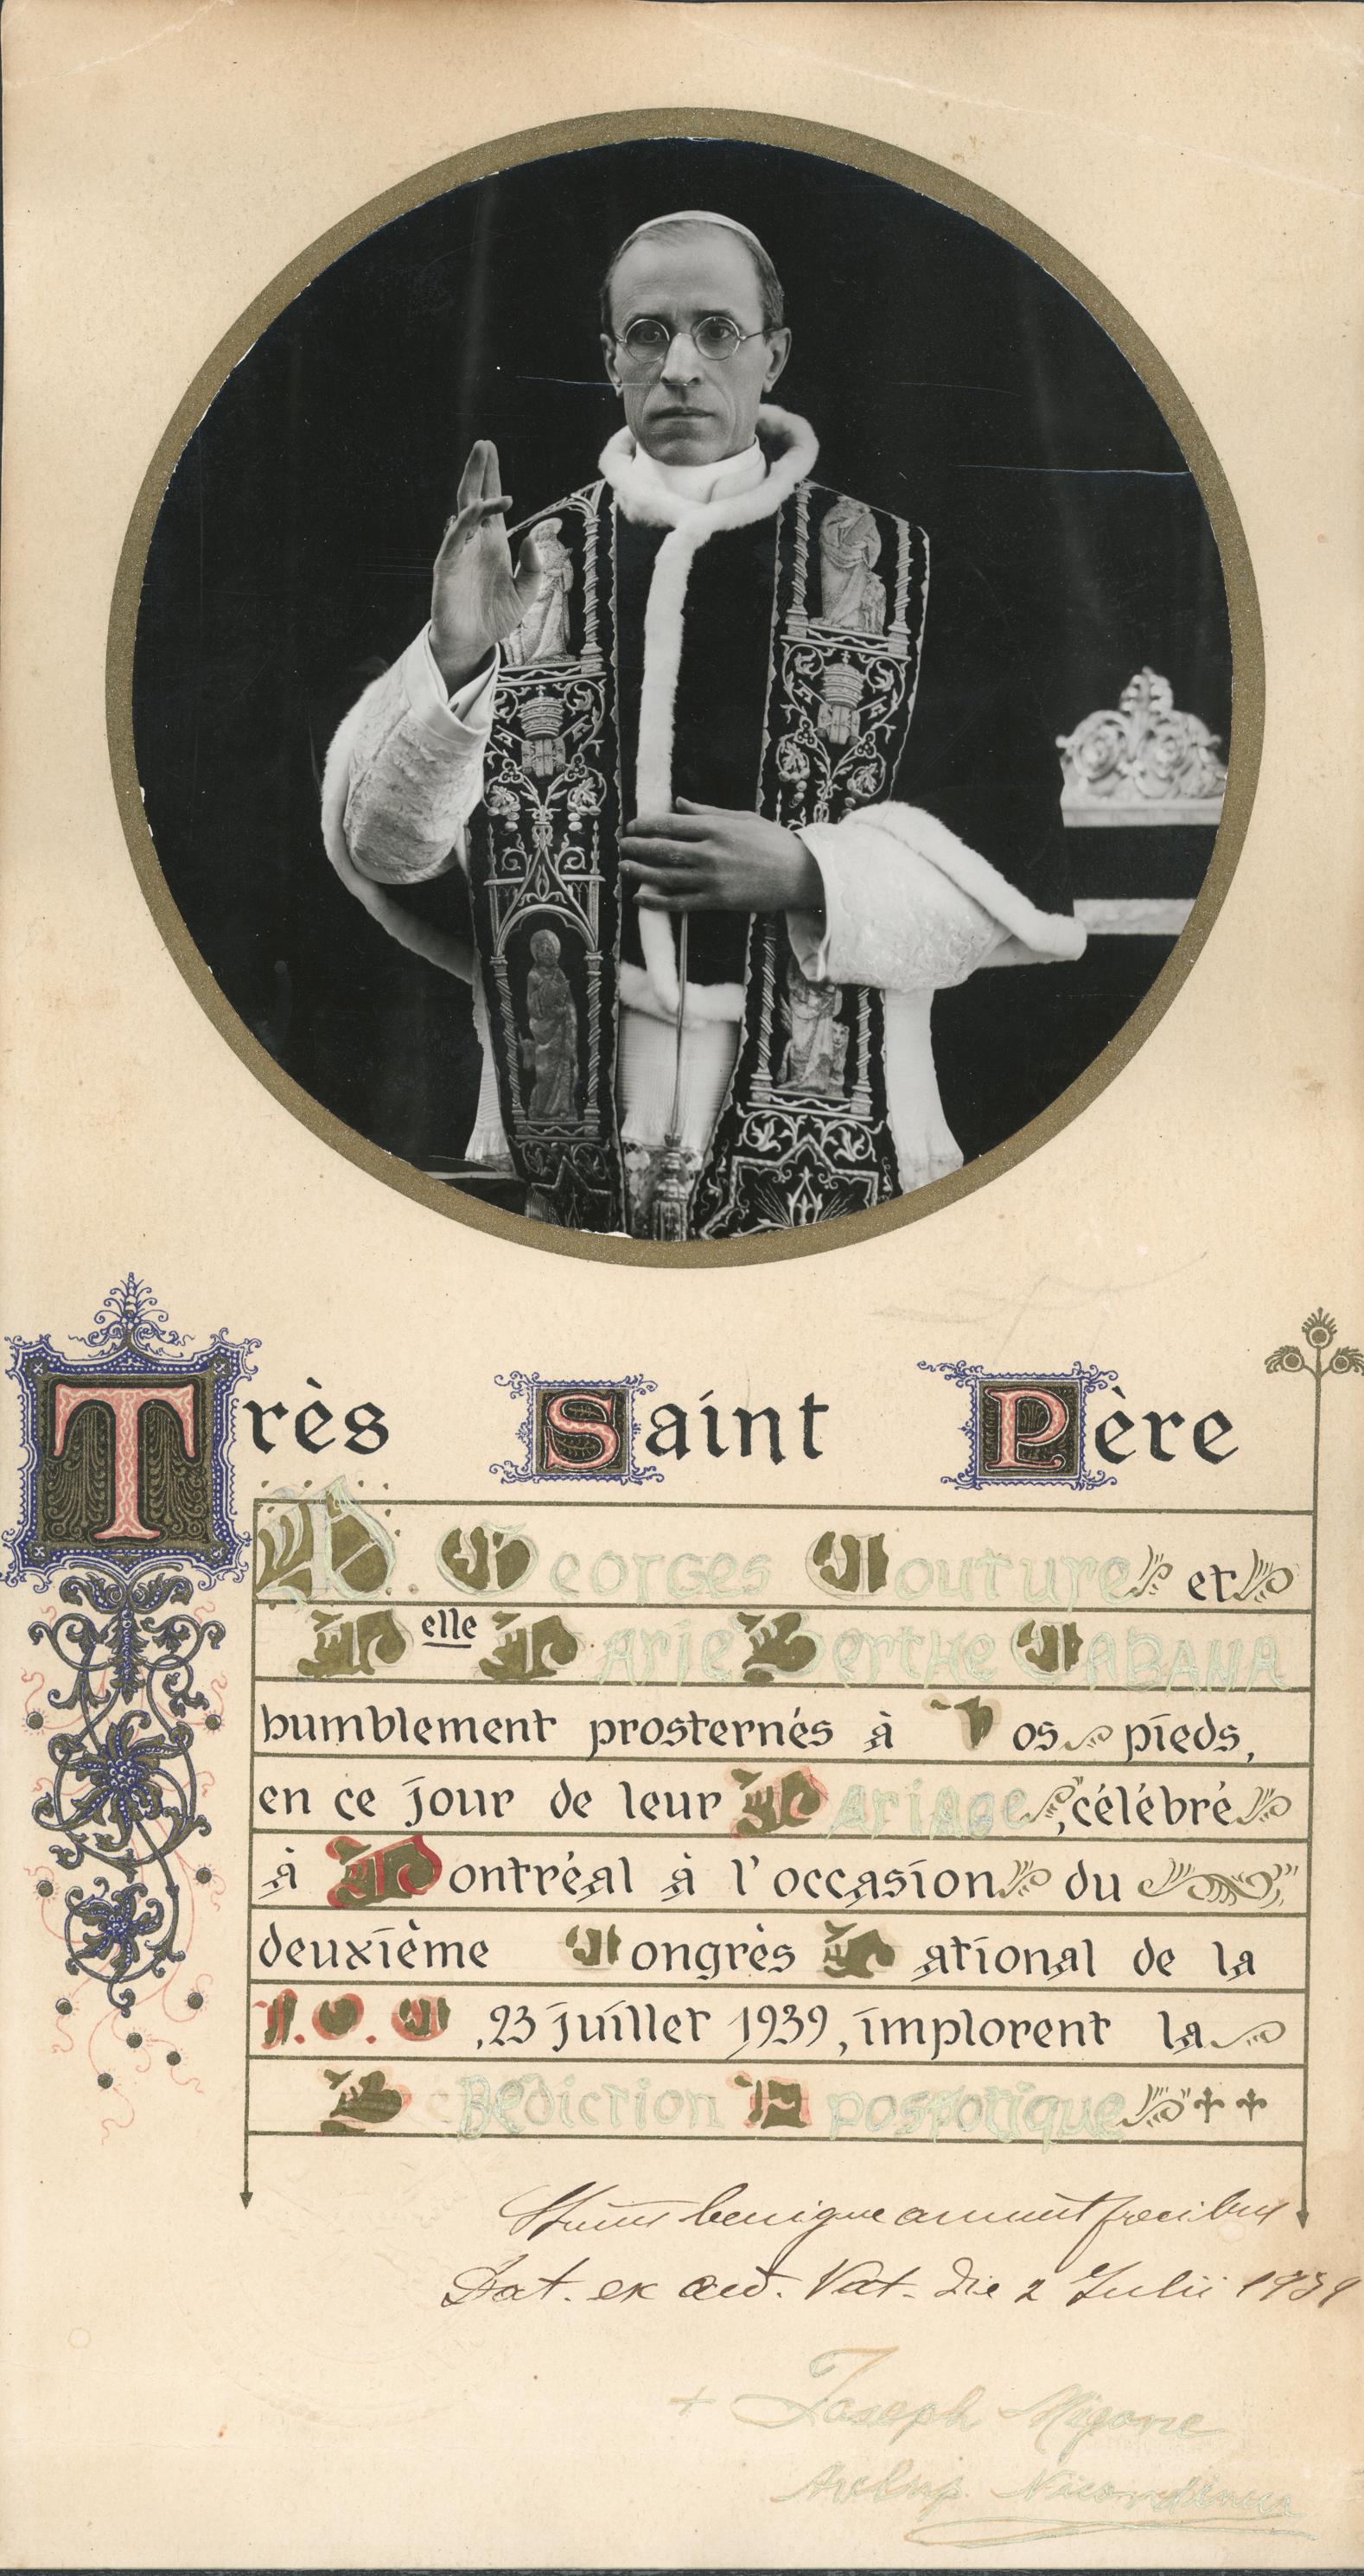 Bénédiction du Pape Pie XII accordée aux mariés de cet événement.